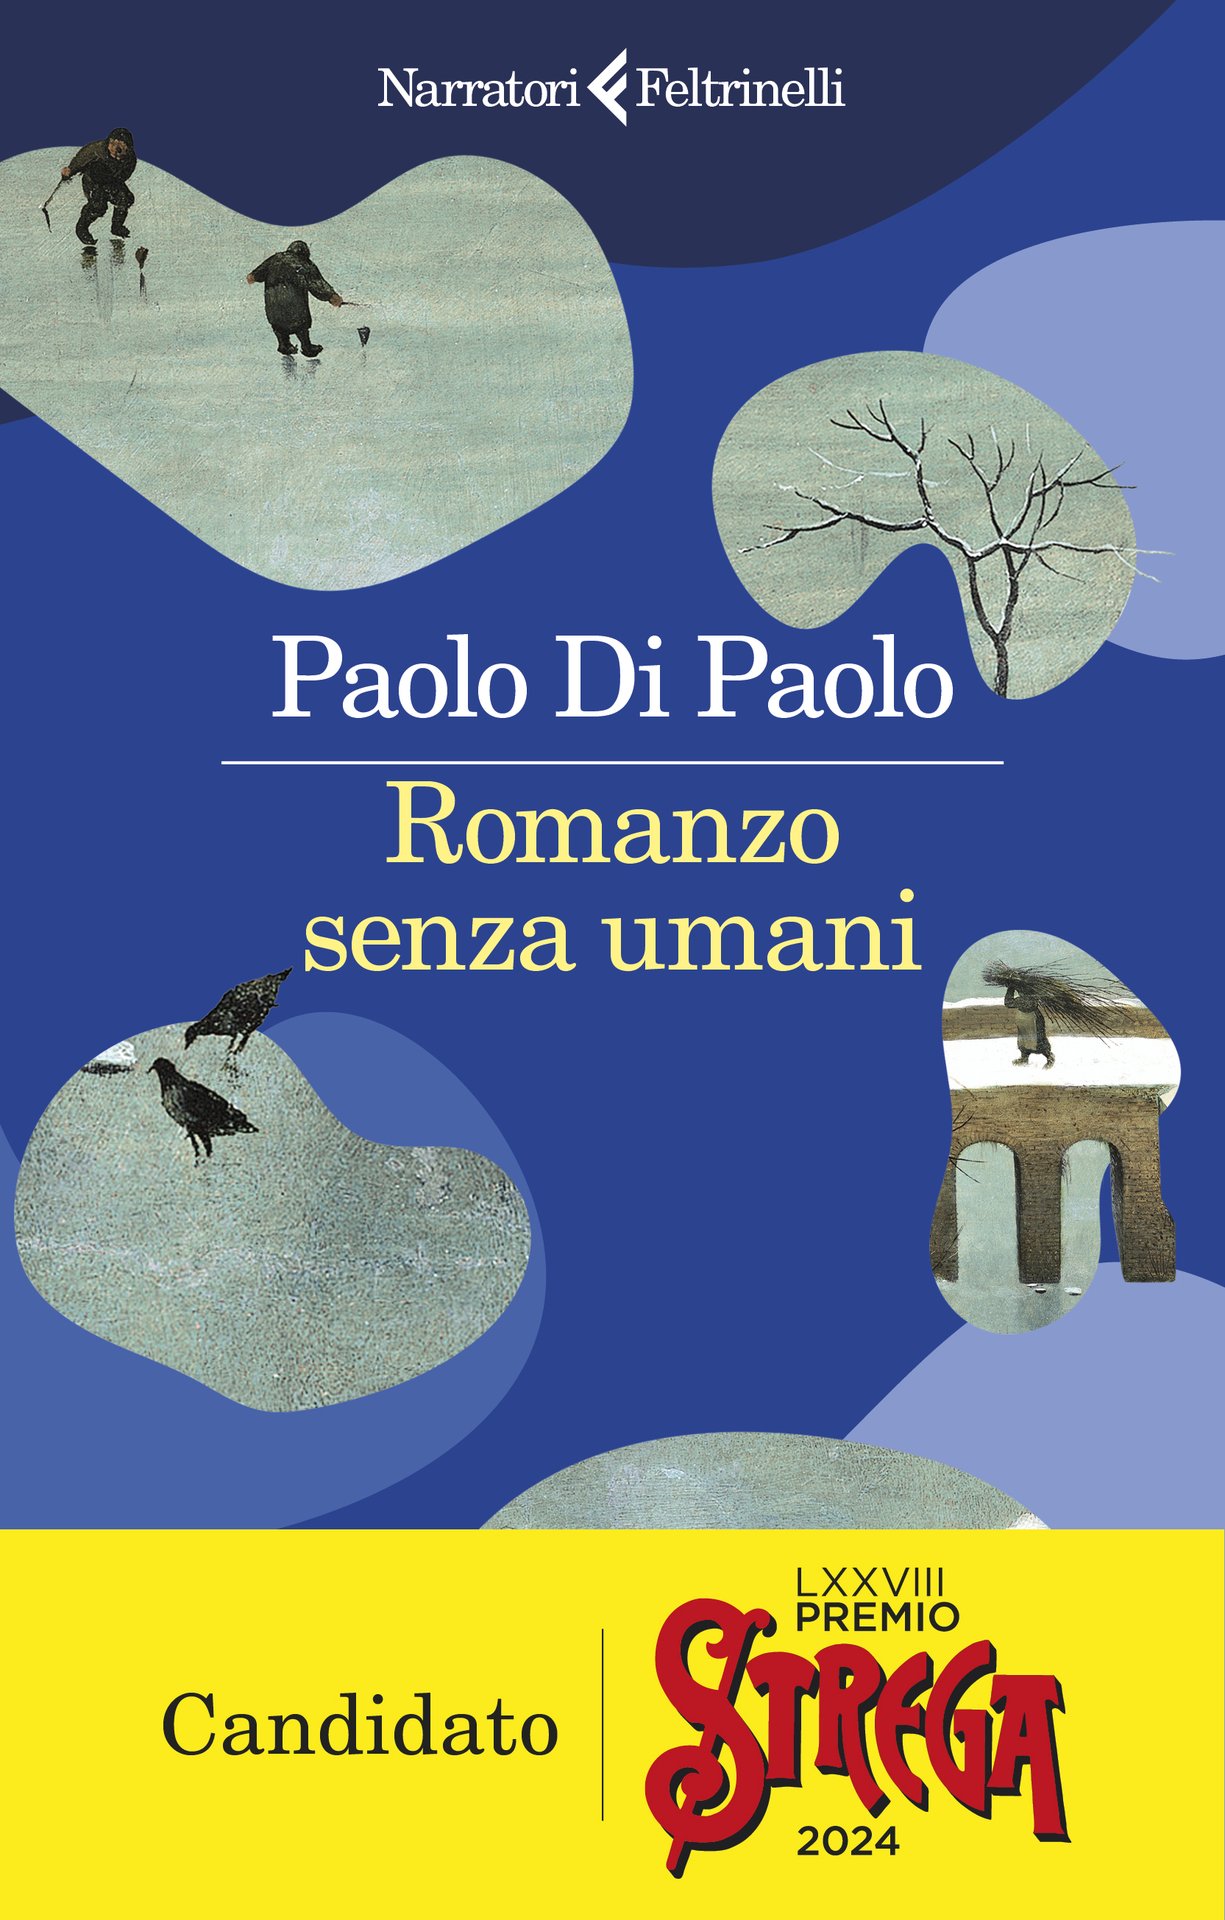 Paolo Di Paolo presenta "Romanzo senza umani" da Verso